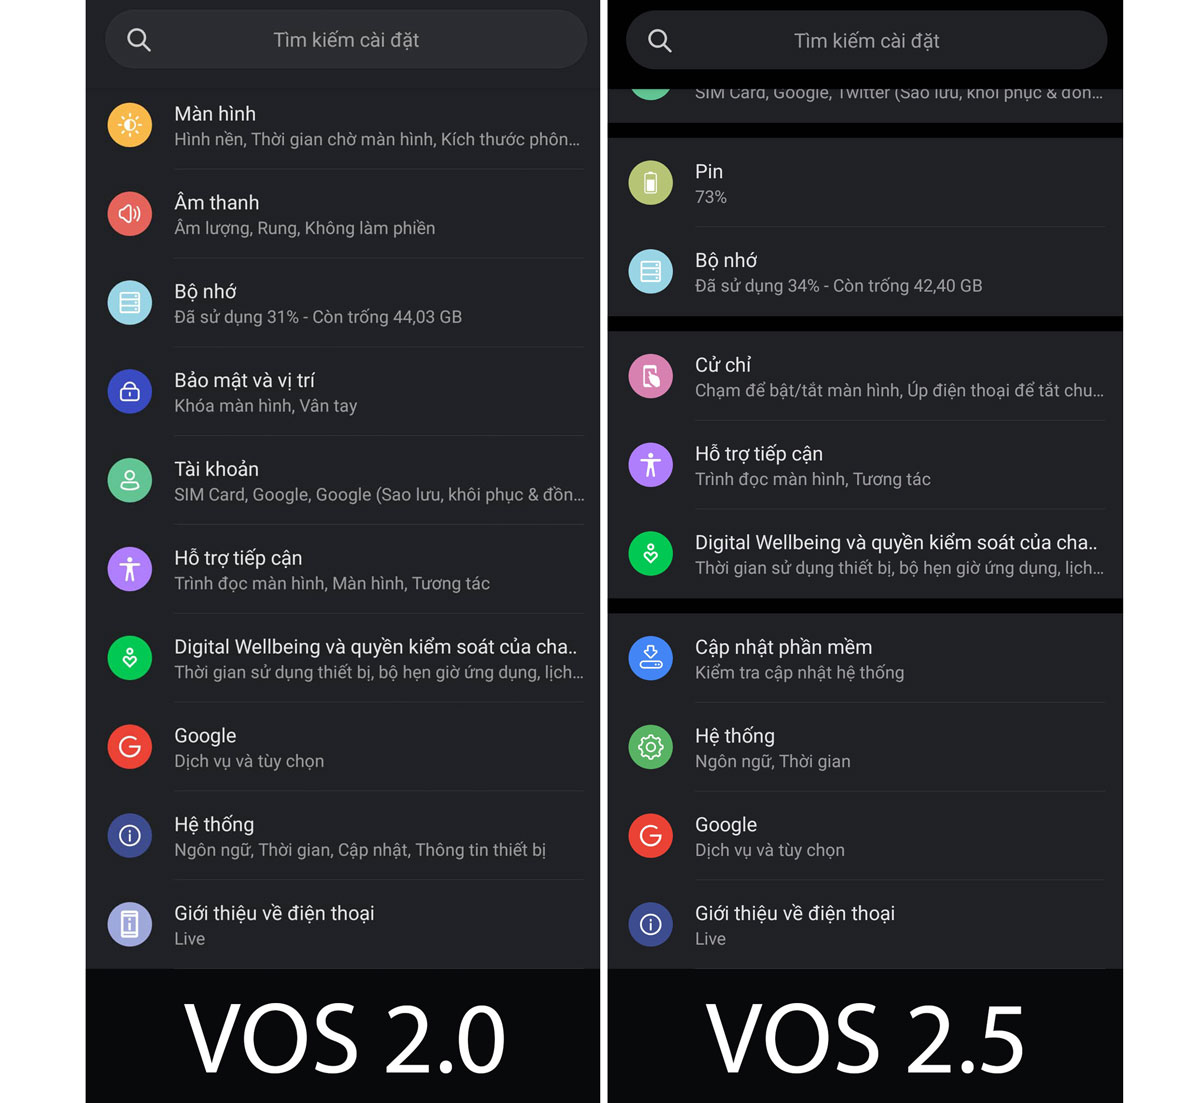 Vsmart cập nhật VOS
2.5 cho Vsmart Live, bổ sung nhiều tính năng mới quan trọng